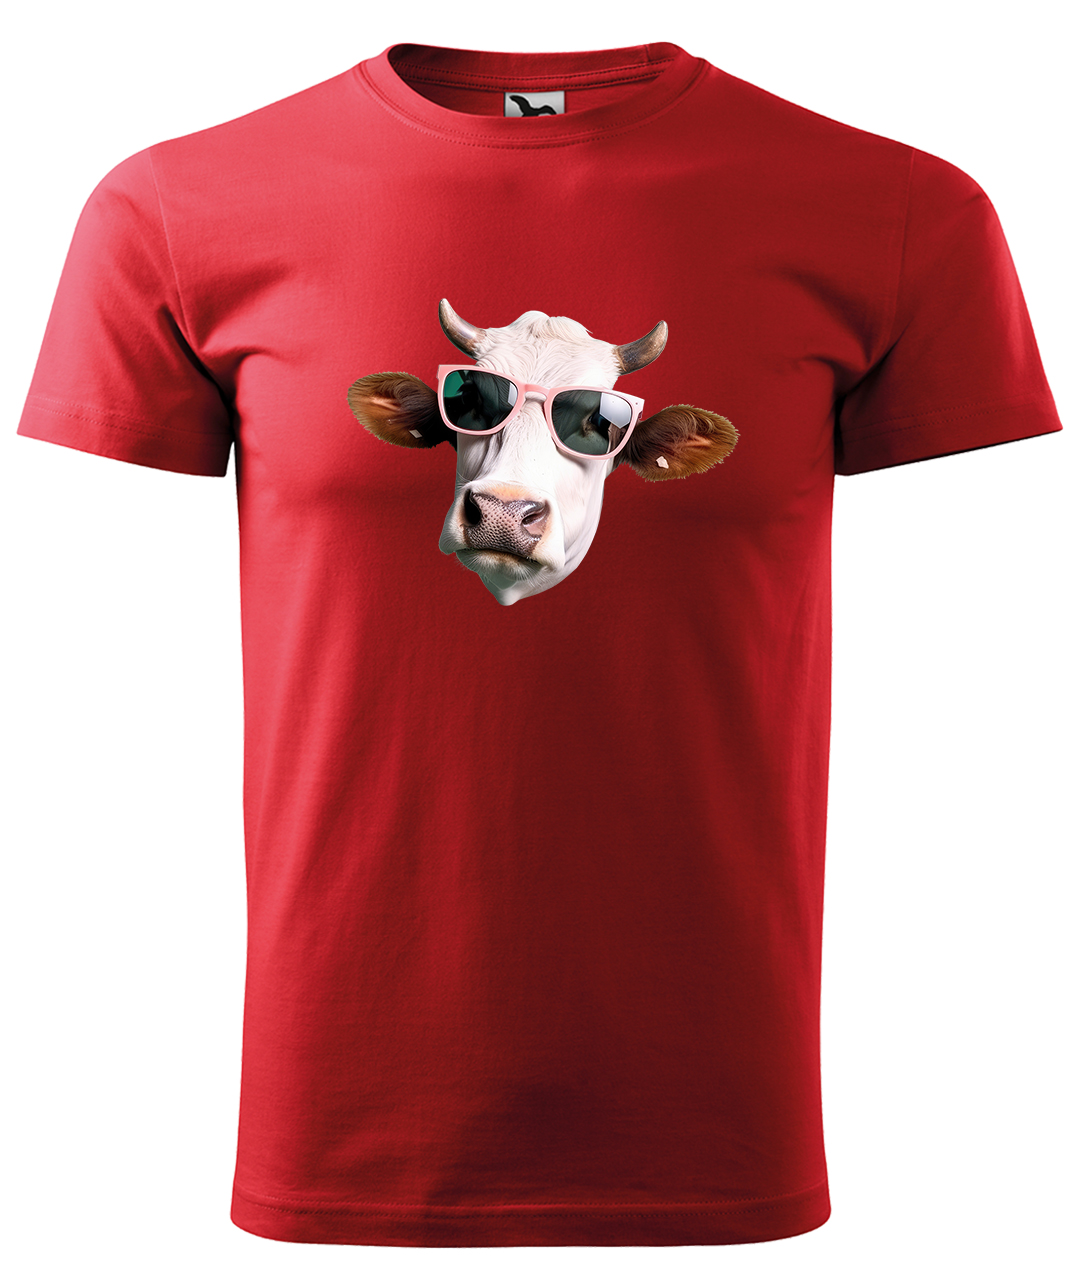 Dětské tričko s krávou - Kráva v brýlích Velikost: 6 let / 122 cm, Barva: Červená (07), Délka rukávu: Krátký rukáv